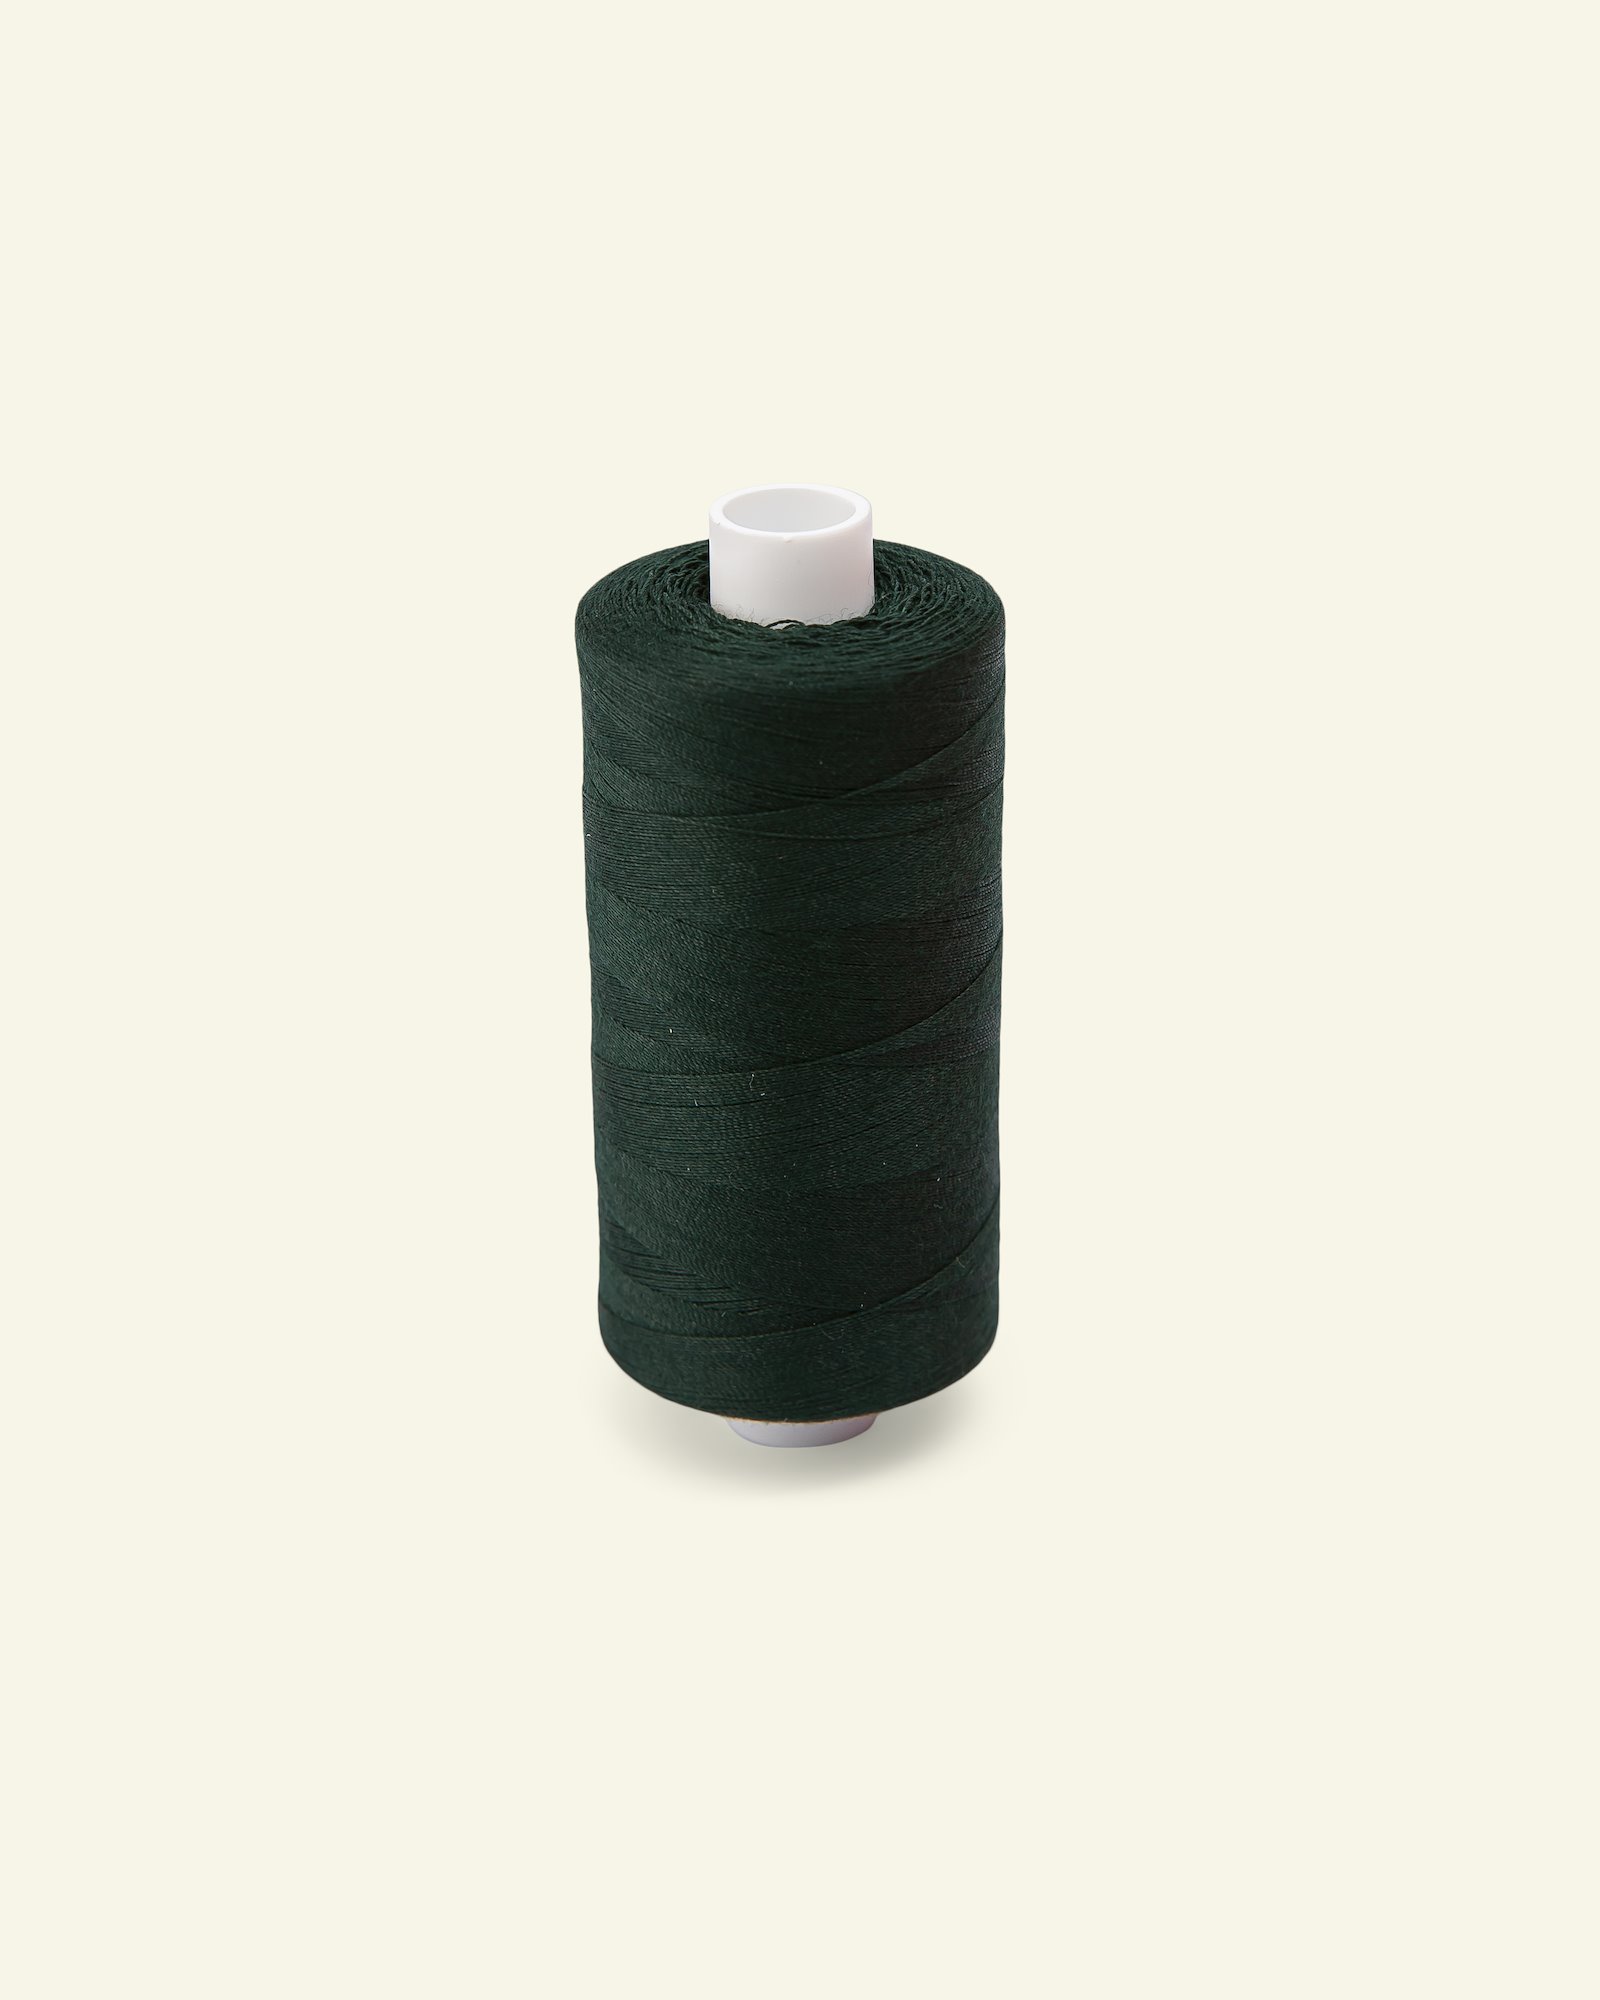 Sewing thread dark bottlegreen 1000m 12103_pack